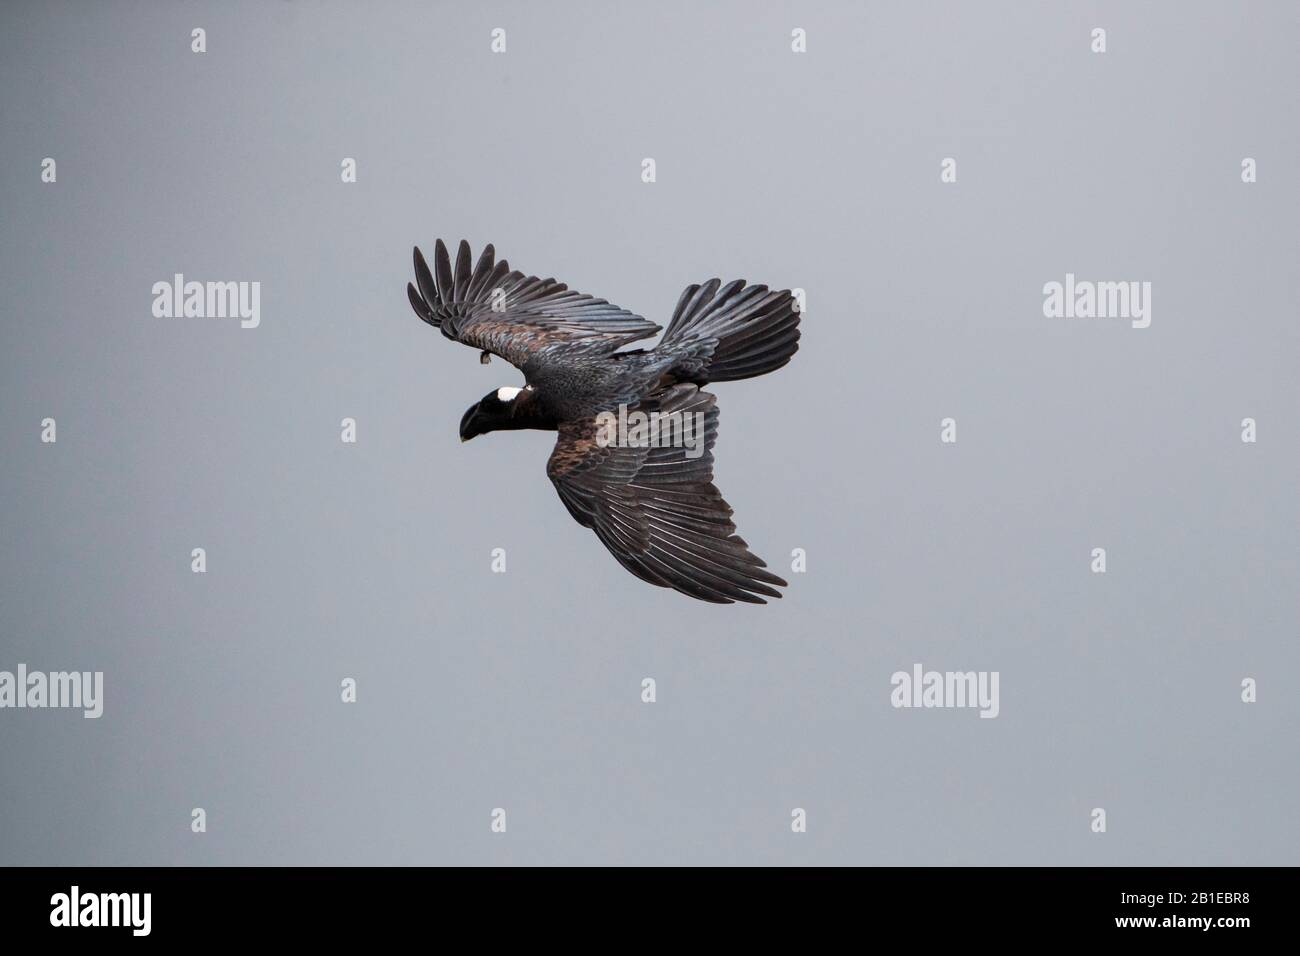 Corbeau à facture épaisse (Corvus crassirostris) en vol, Simien Mountain, Ethiopie Banque D'Images